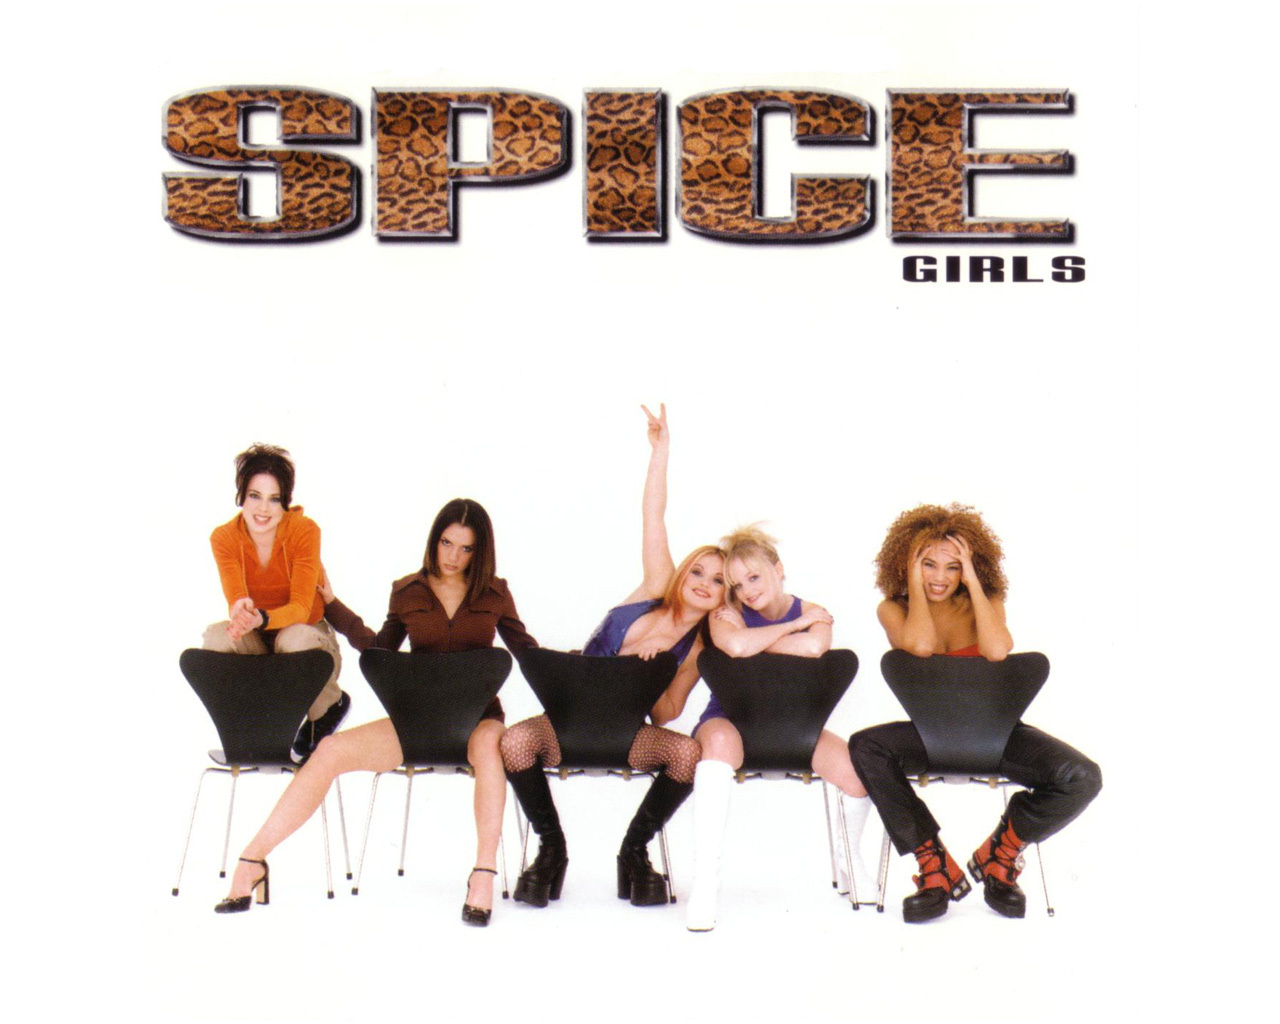 spice girls wallpaper,album cover,font,dancer,team,majorette (dancer)